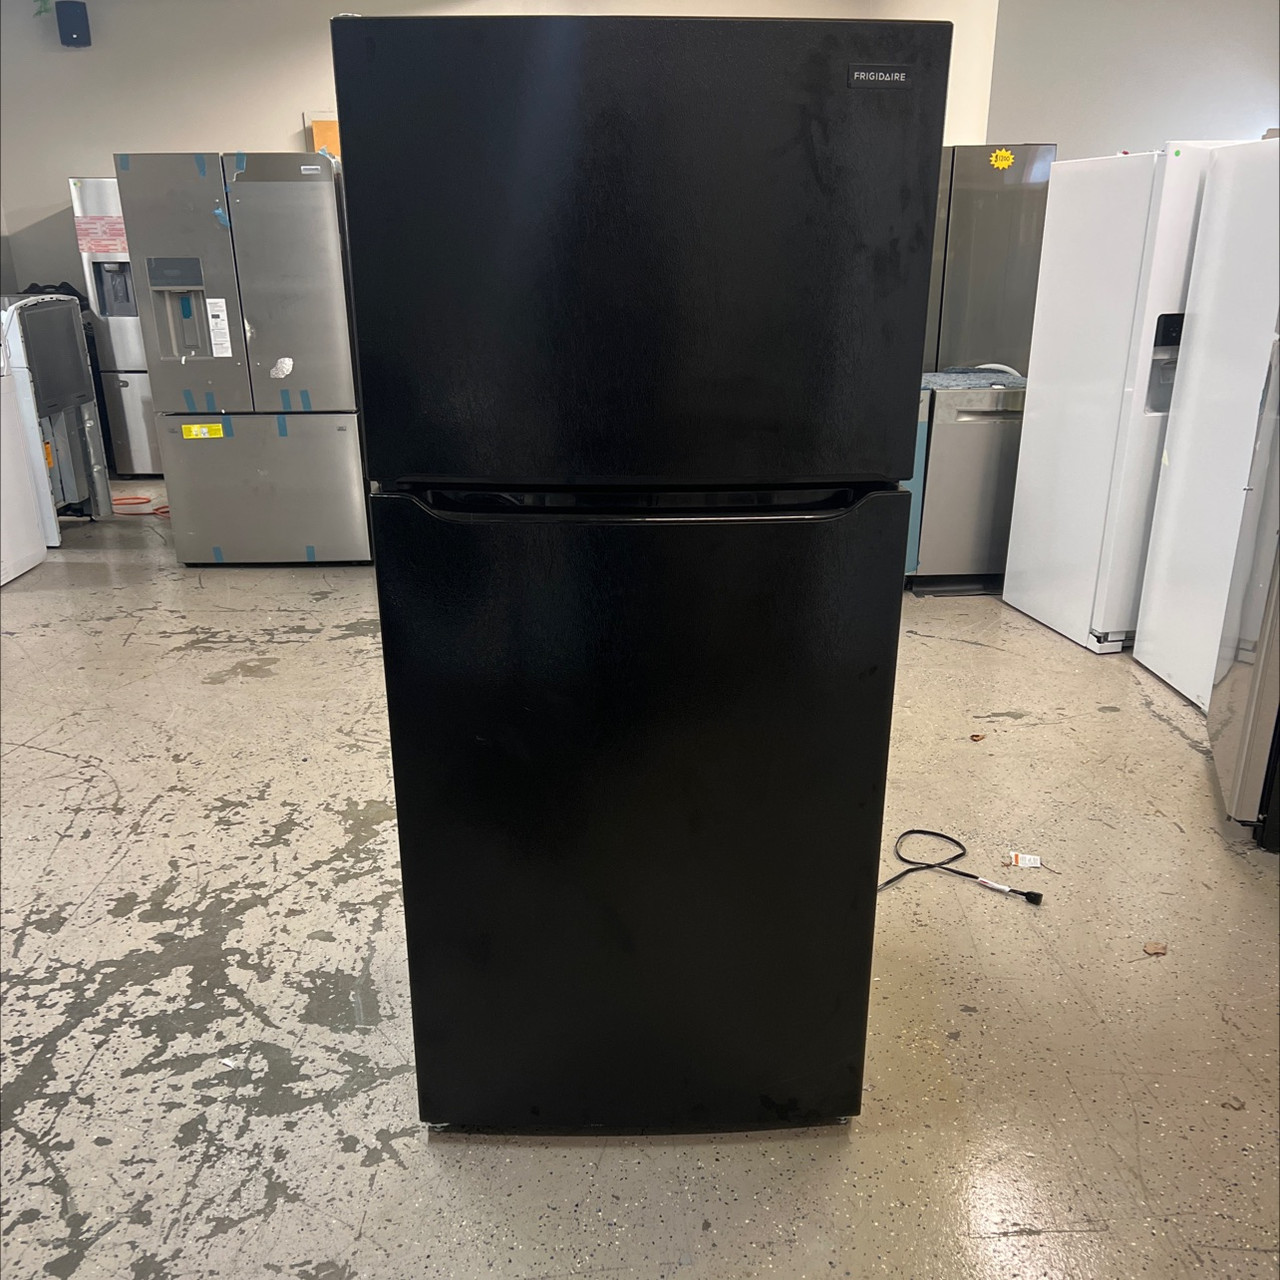 Frigidaire FFTR1814WB 18.3 Cu. ft. Top Freezer Refrigerator – Black